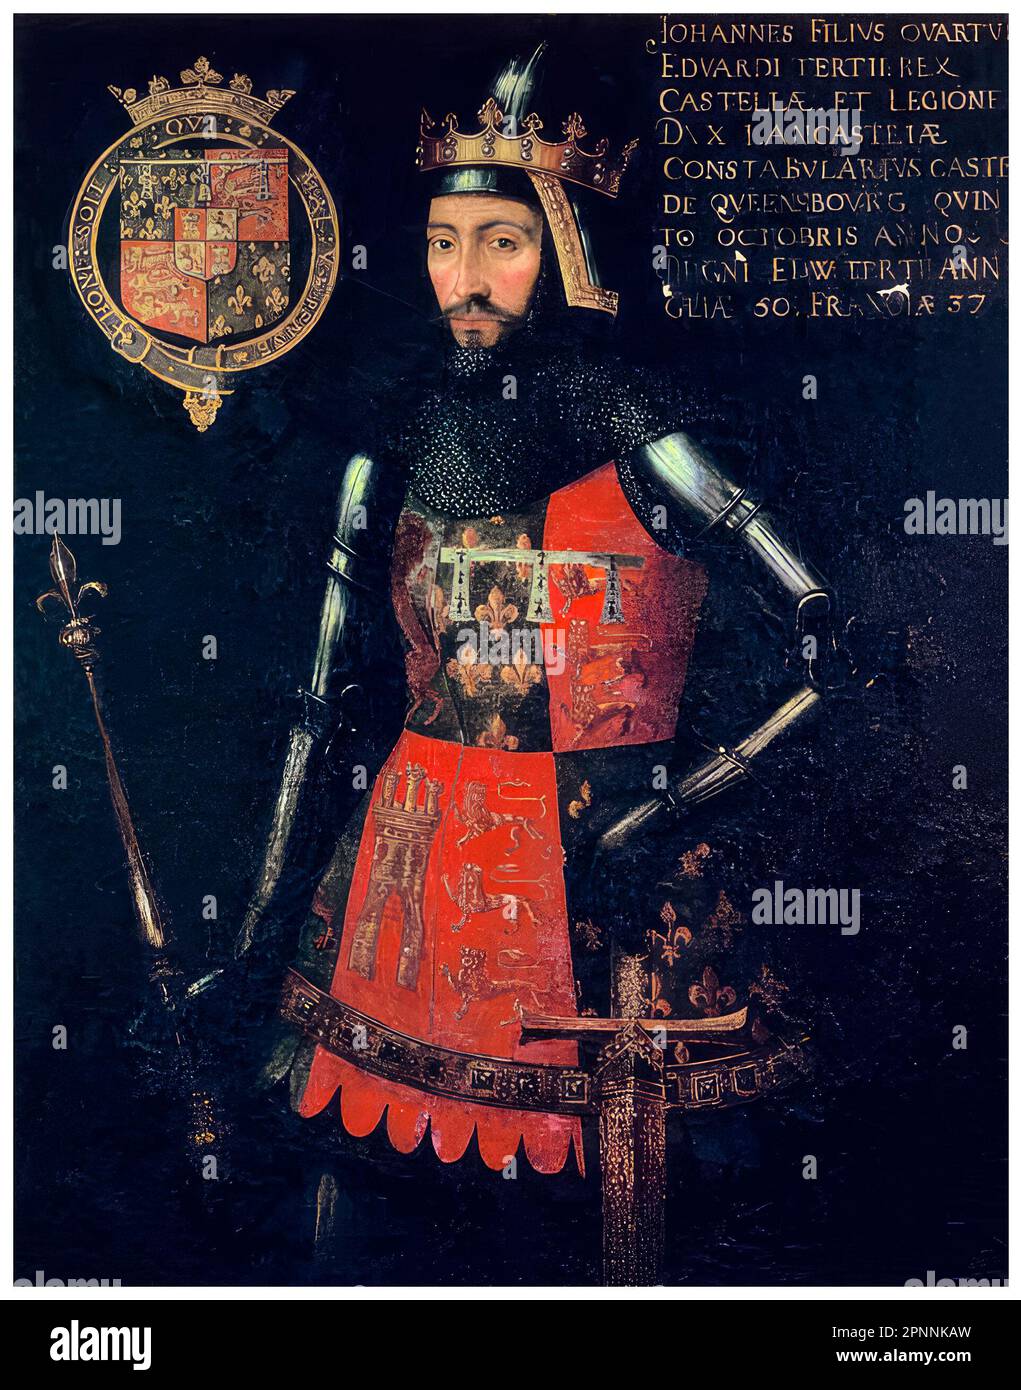 Jean de Gaunt, duc de Lancaster (1340-1399), prince royal anglais du 14th siècle, chef militaire et homme d'État. Fondateur de la Maison de Lancaster, portrait peint à tempera sur panneau par un artiste inconnu, vers 1593 Banque D'Images